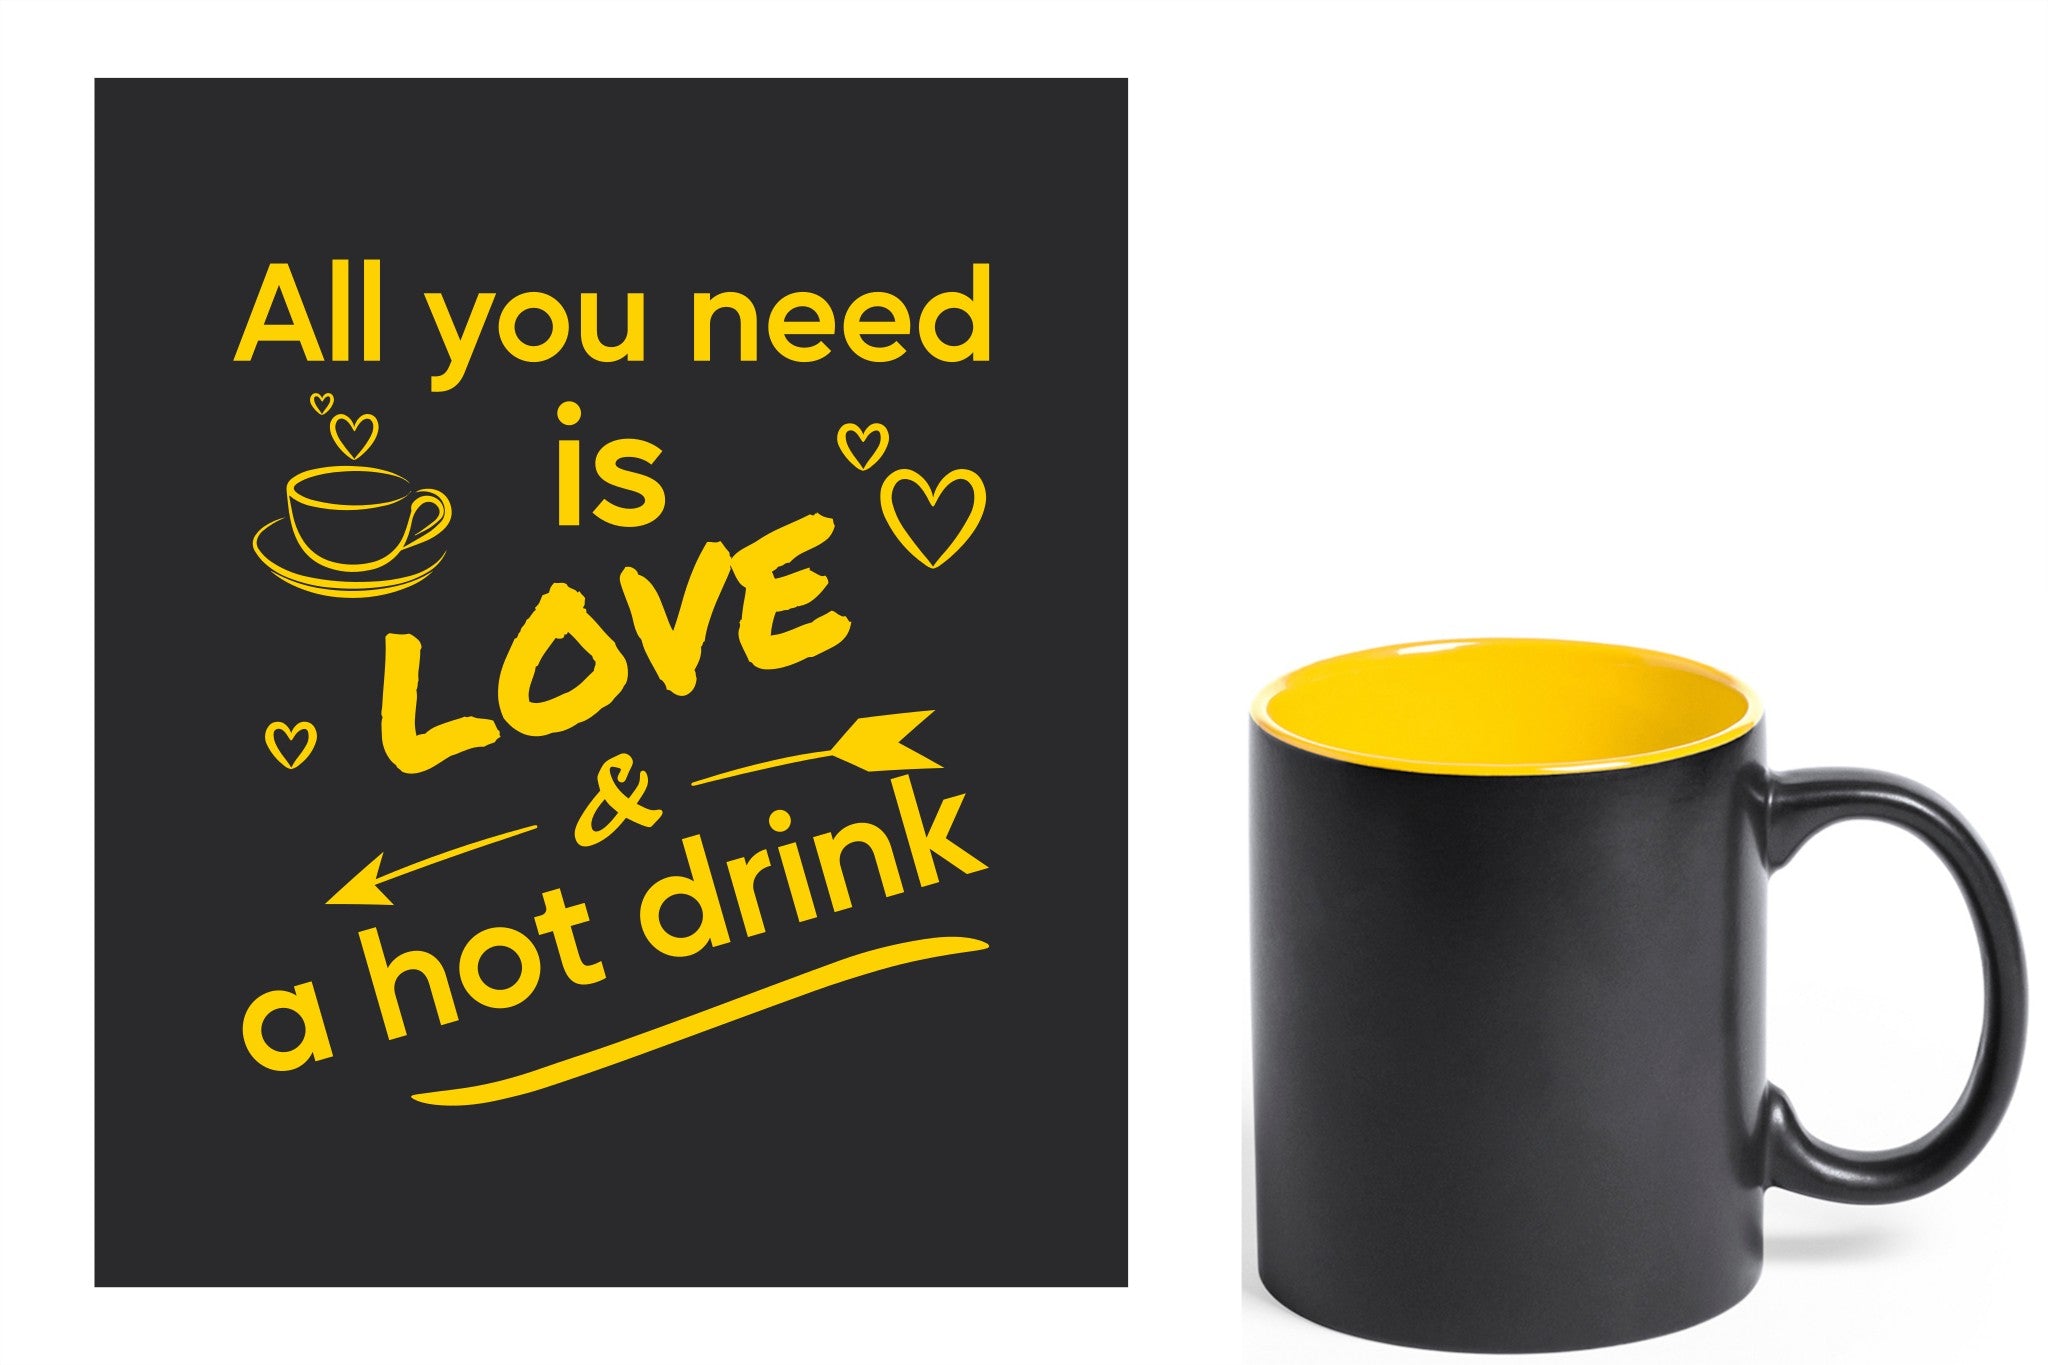 zwarte keramische mok met gele gravure  'All you need is love & a hot drink'.